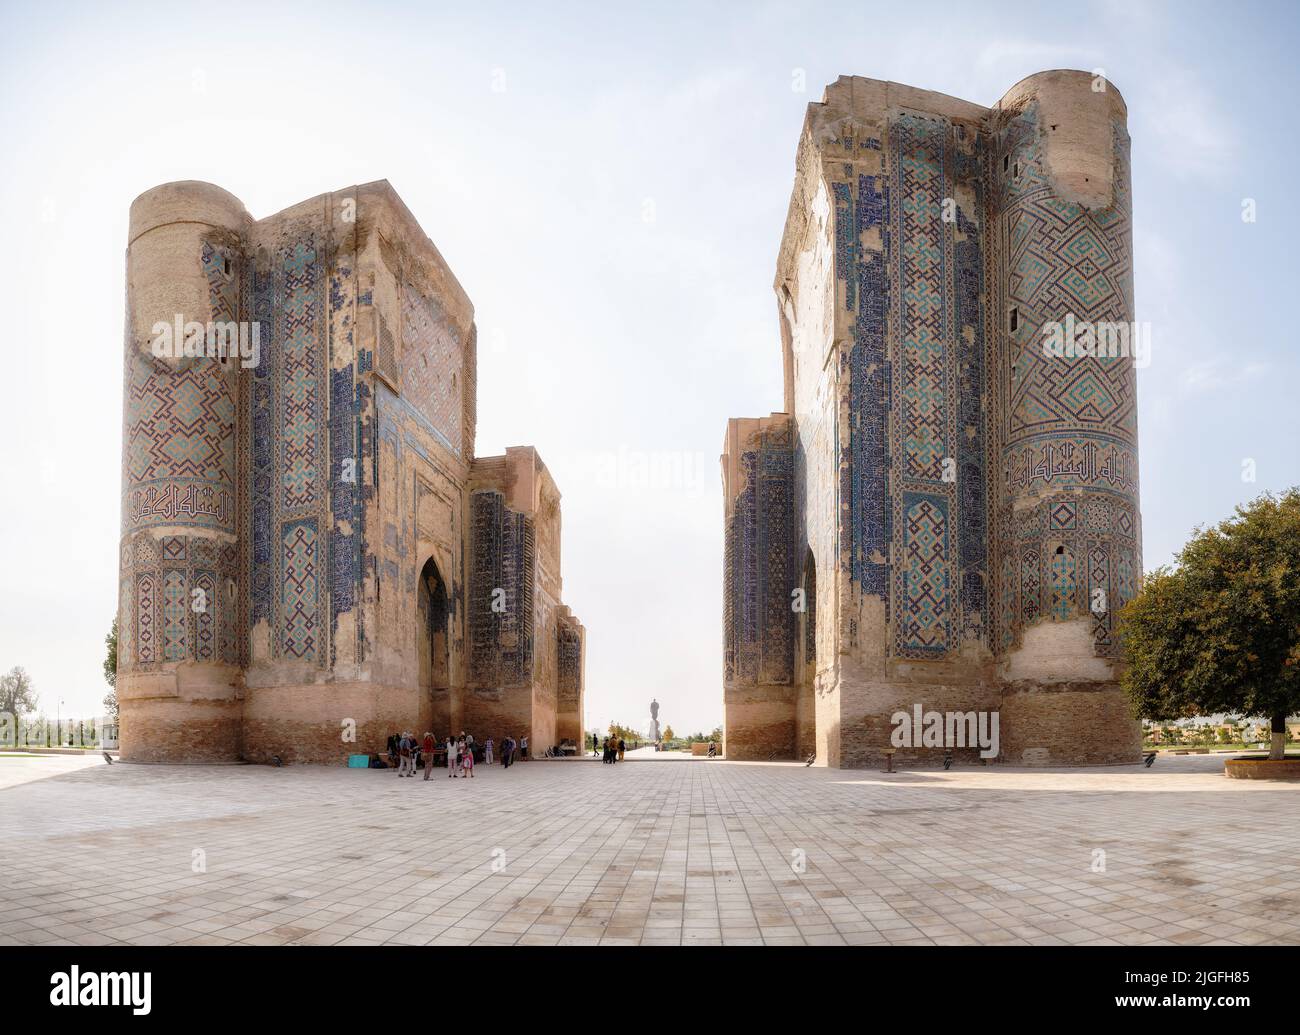 Shakhrisabz, Uzbekistán - 16 de octubre de 2016: Ruinas del palacio de Timur Ak Saray en su ciudad natal de Shakhrisabz Foto de stock